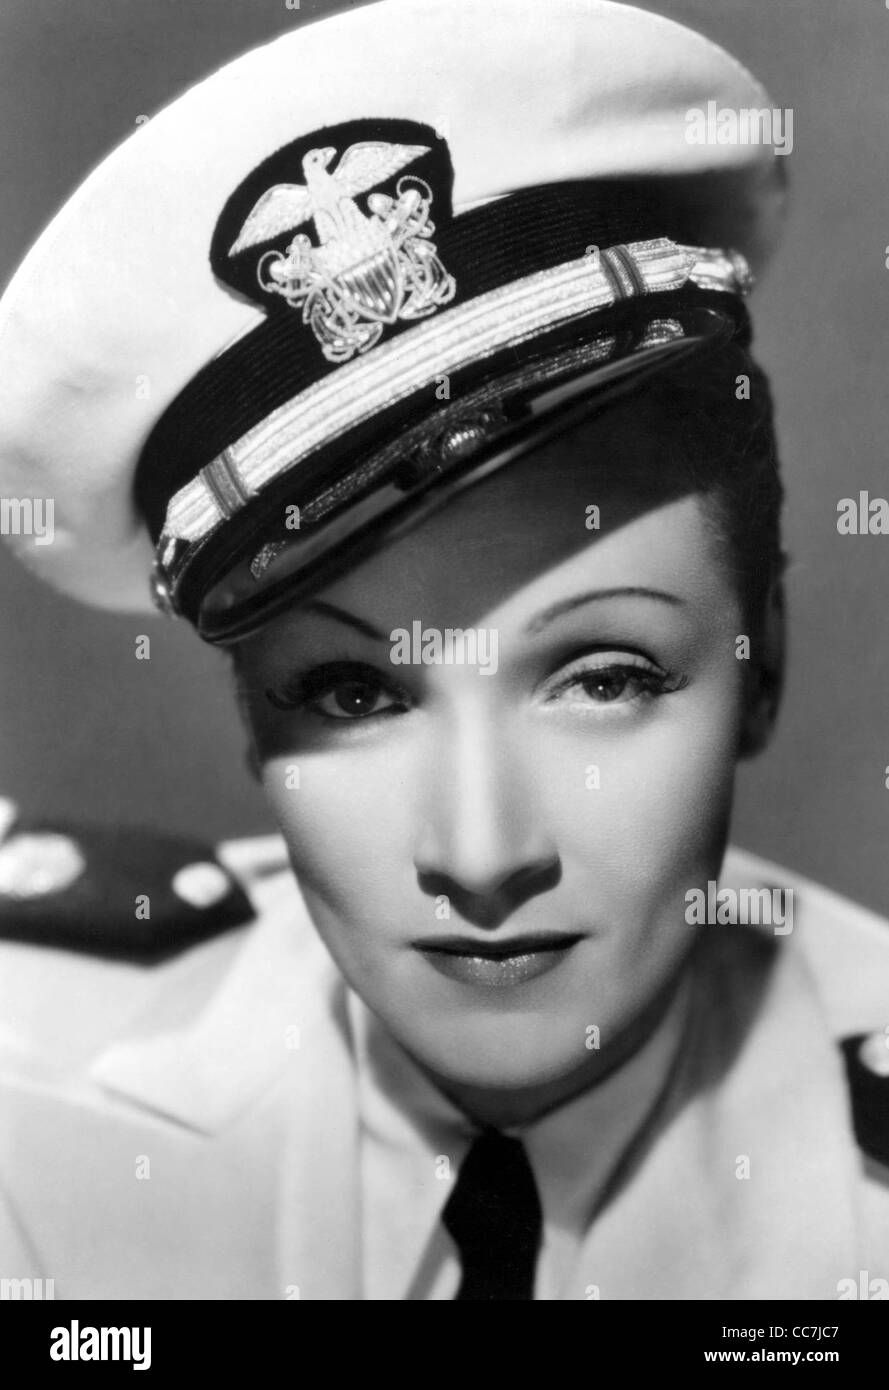 Marlene Dietrich (27 décembre 1901 - 6 mai 1992) - actrice et chanteuse germano-américain - vêtements masculin Banque D'Images